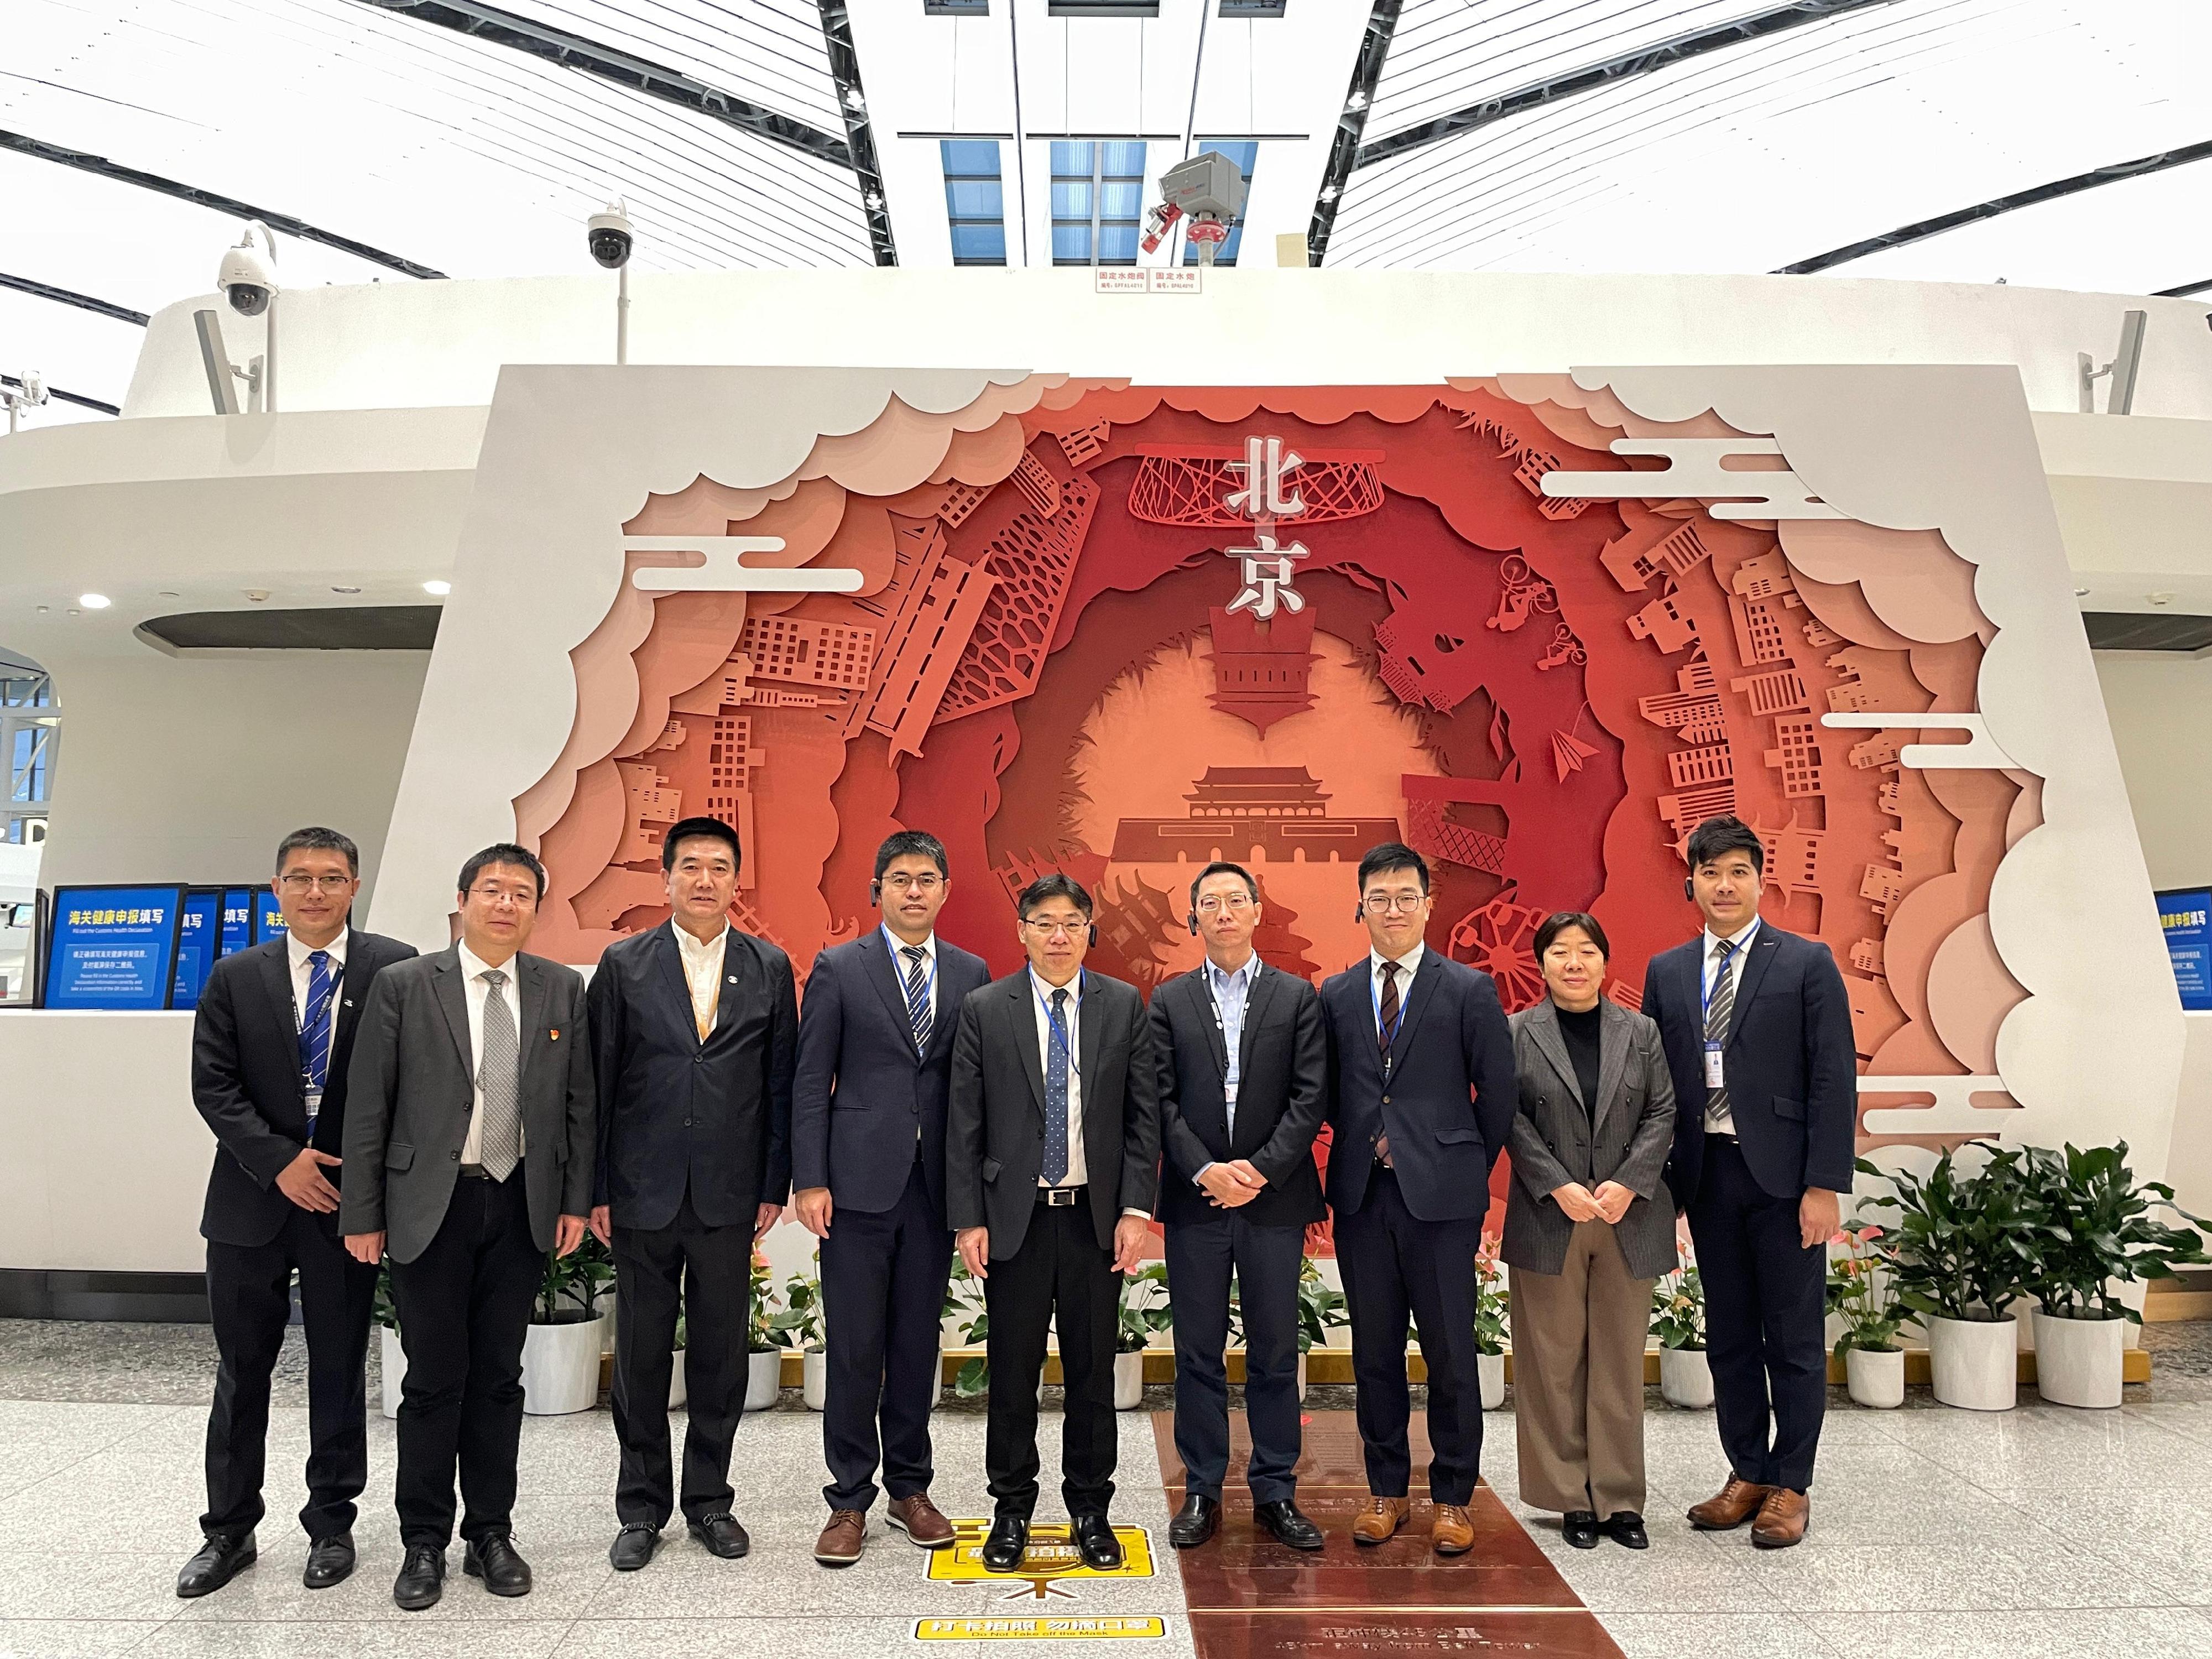 運輸及物流局局長林世雄（中）昨日（四月九日）參觀北京大興國際機場航站樓，與中國民用航空局及大興國際機場的代表在機場內的北京中軸合照。